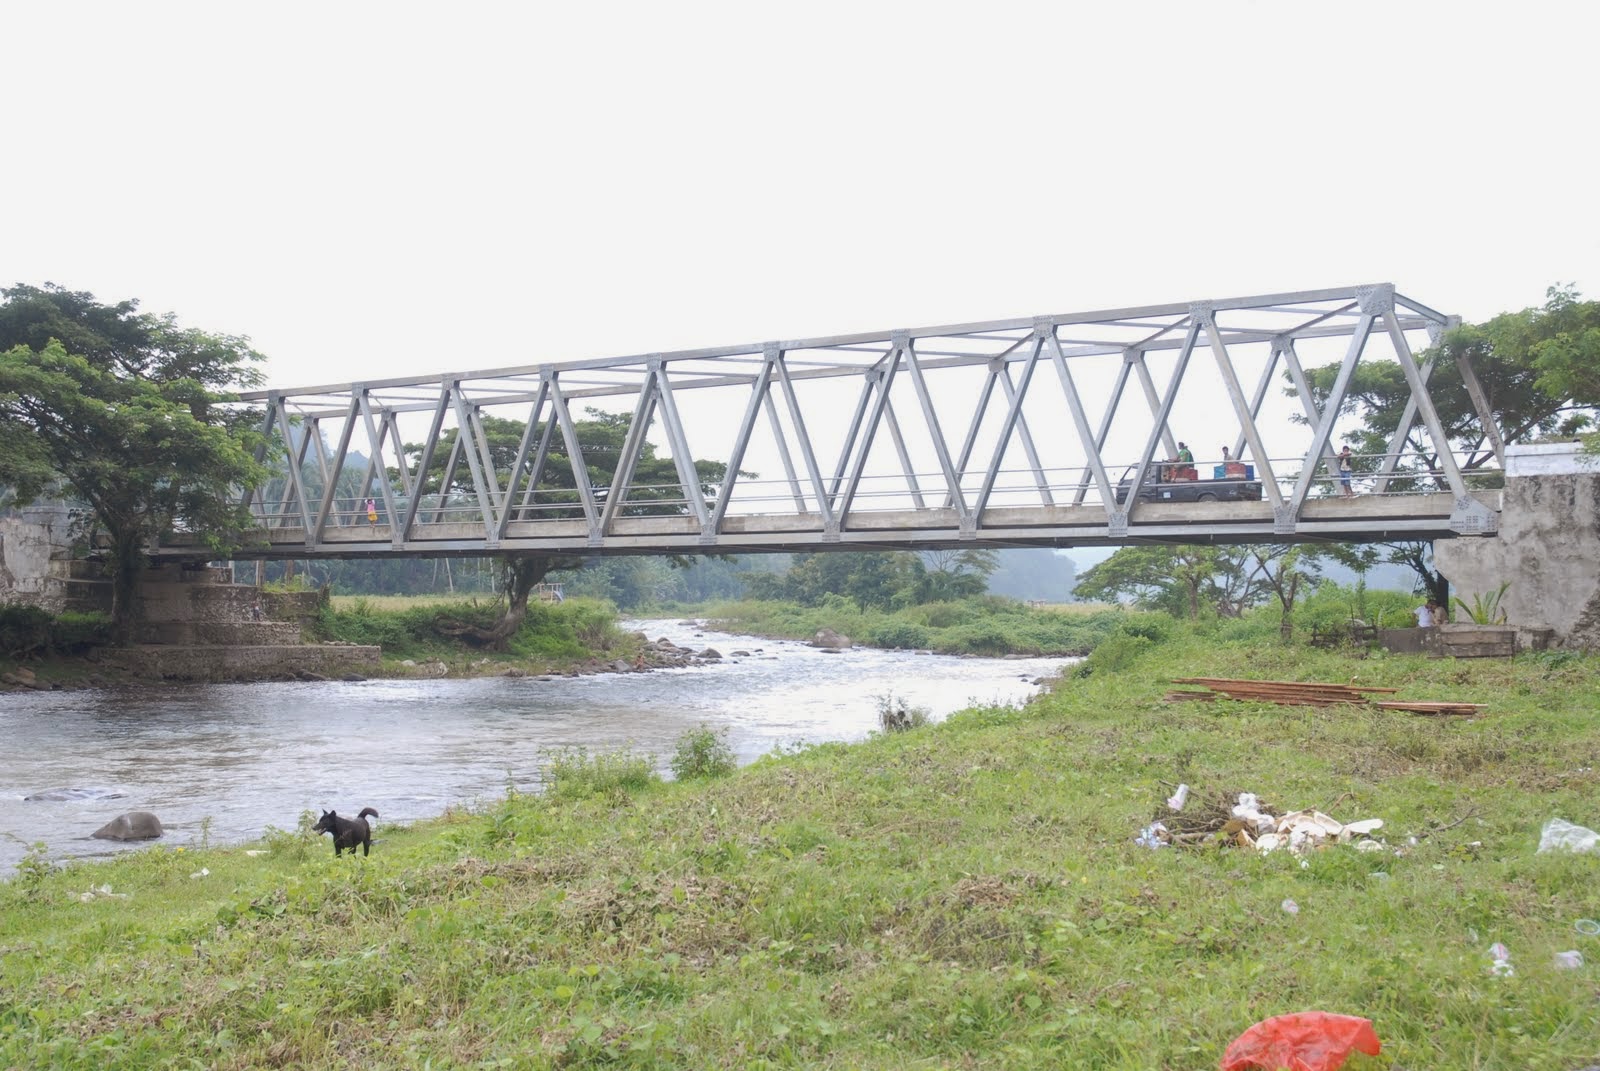  Desain Jembatan  Baja Desain  Properti Indonesia